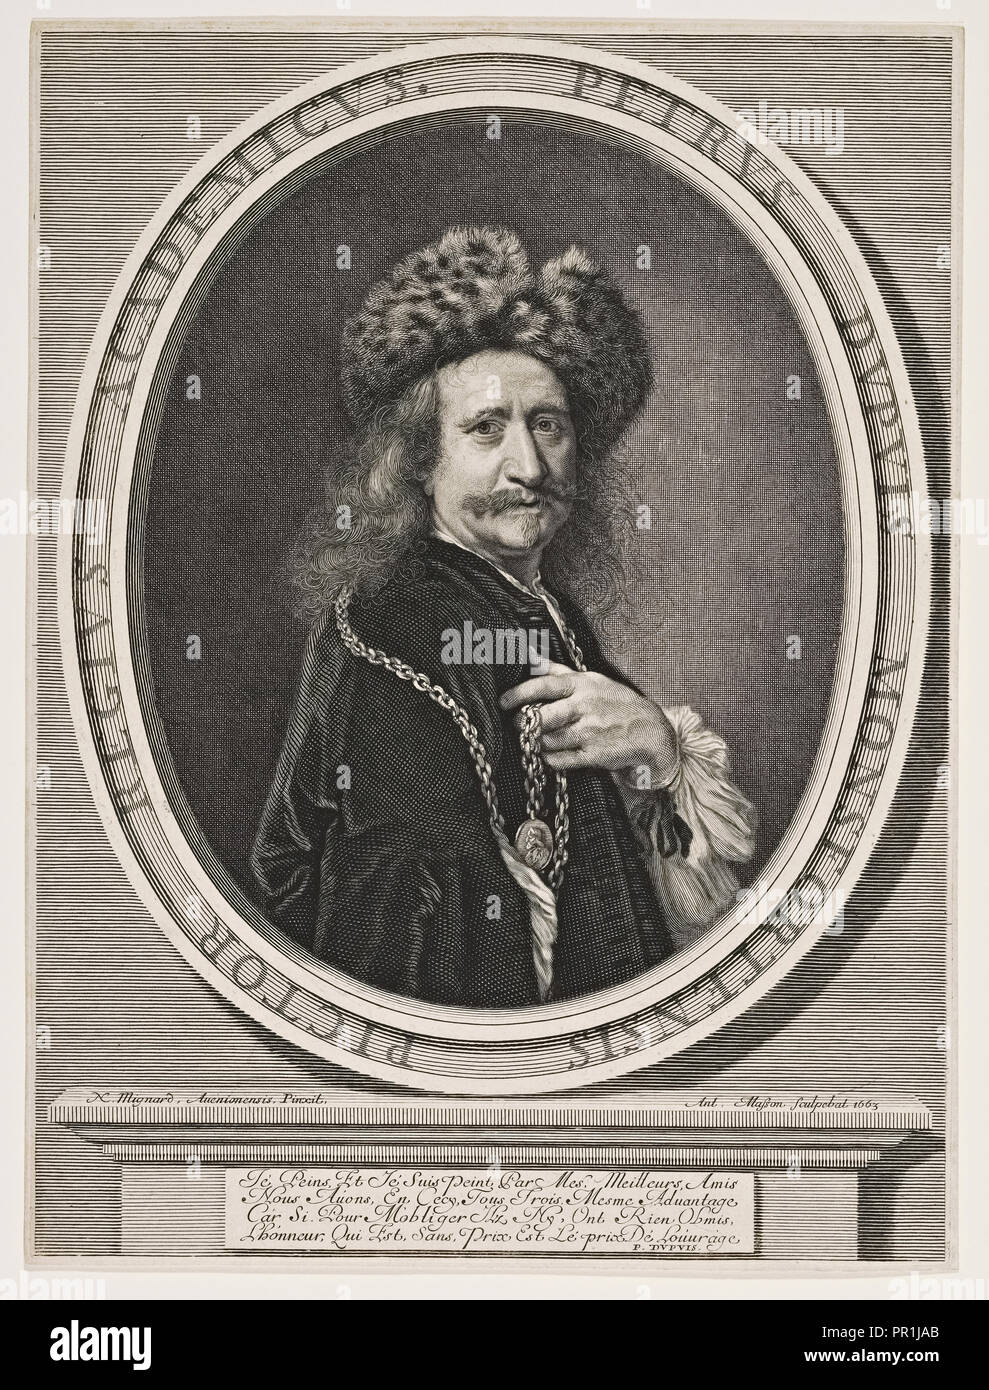 Petrus Dupuis Monsfortensis pictor Regius Academicus, Masson, Antoine, 1636-1700, 1663 Stock Photo